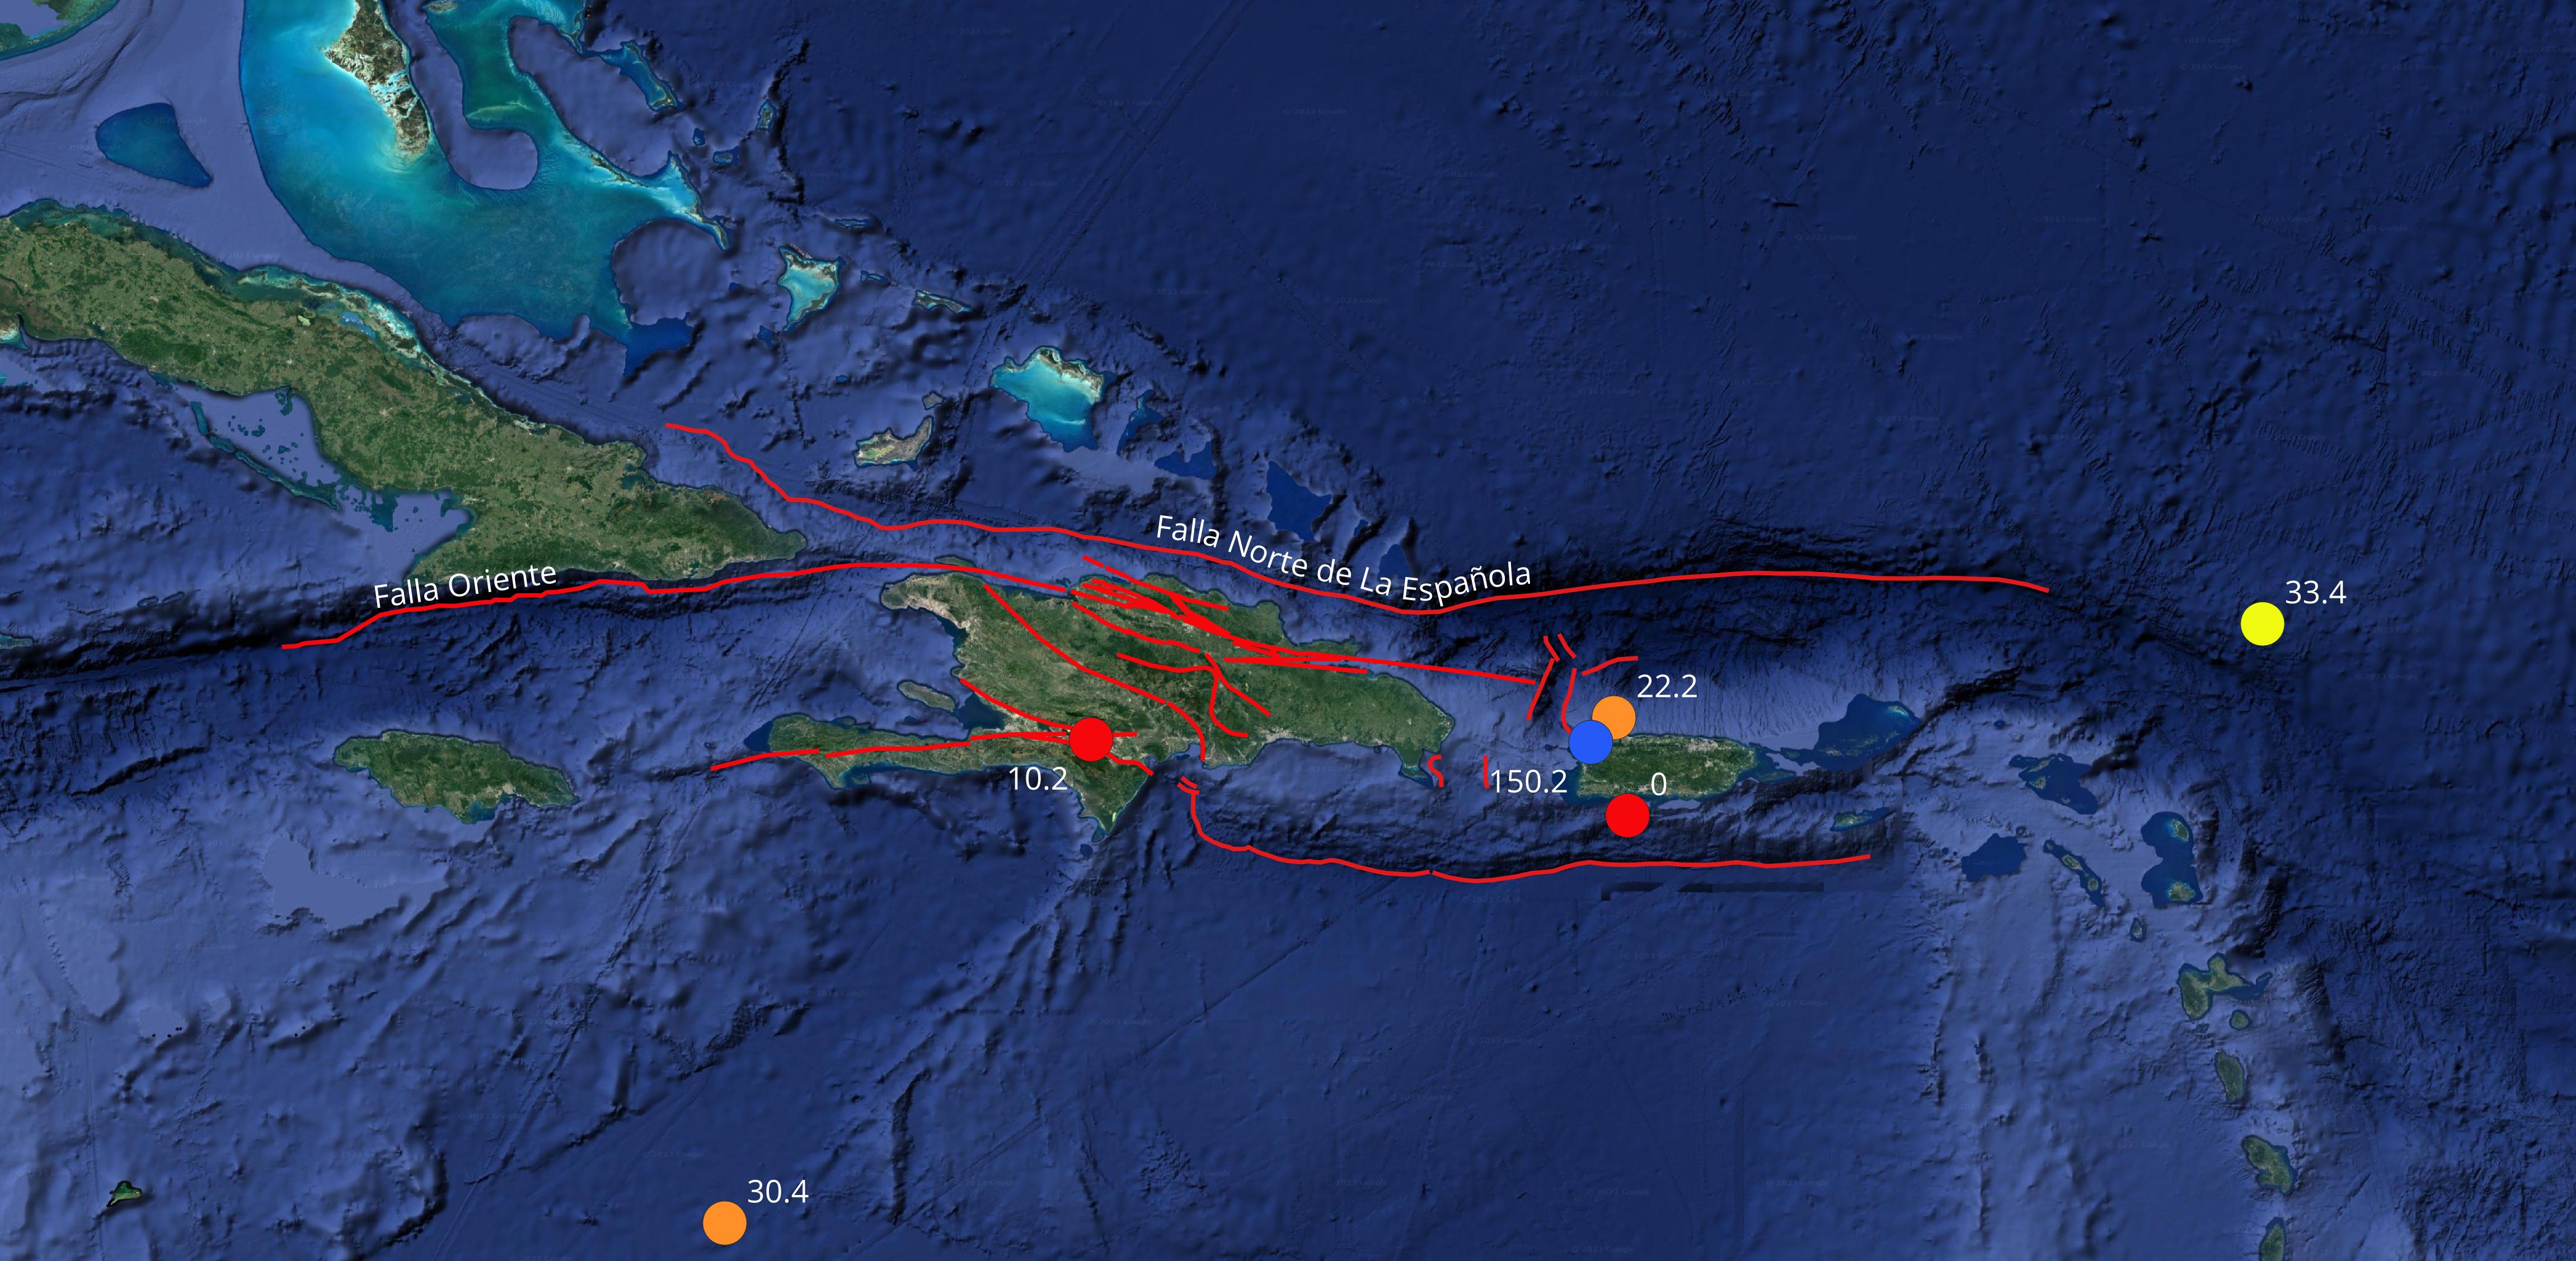 Imagen N° 2: Mapa parcial del Caribe mostrando los 6 eventos de magnitudes superiores a 4.0. Se indica además la profundidad (km) de cada epicentro 